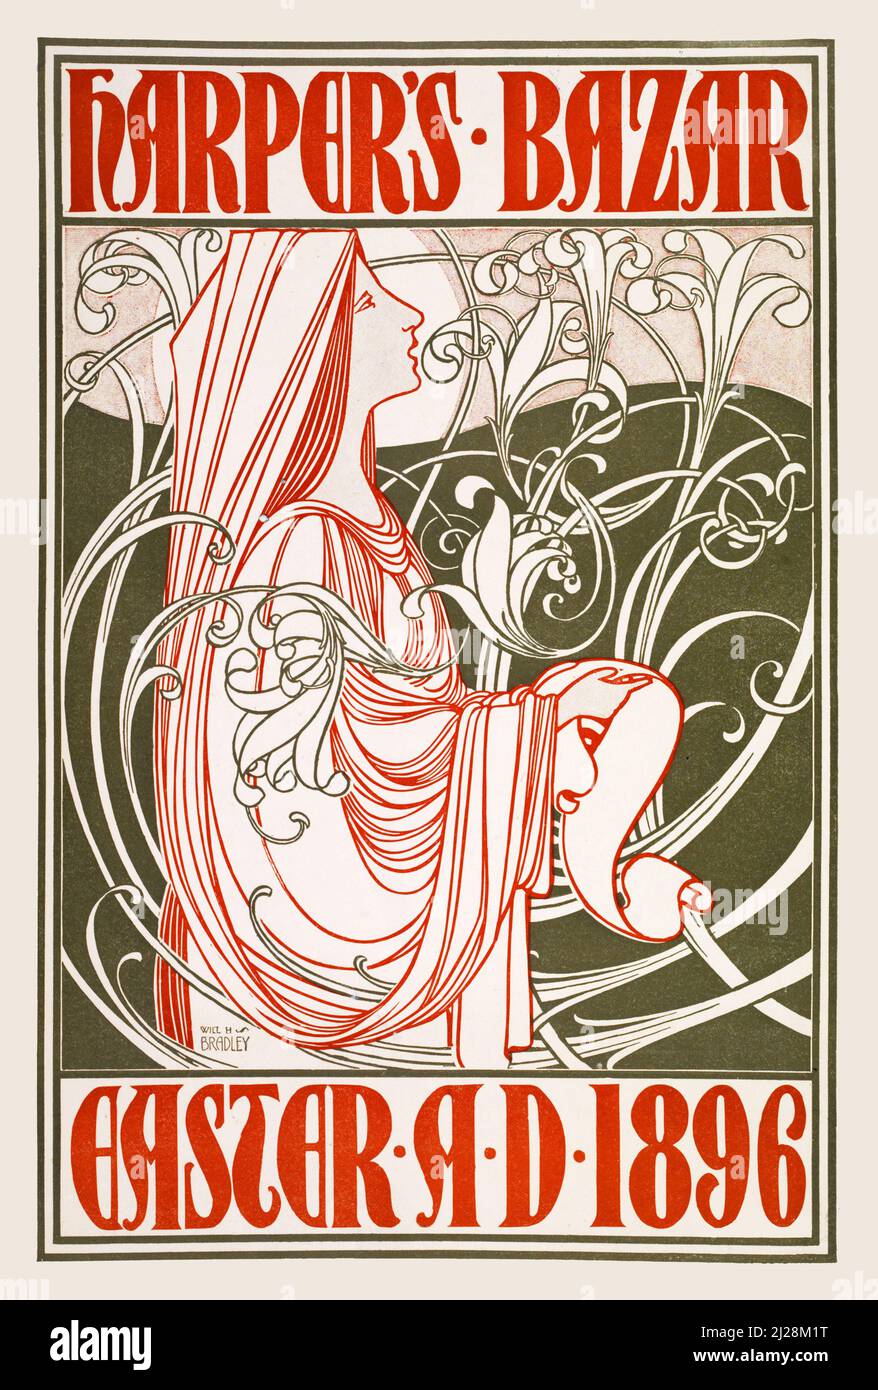 Will Bradley Kunstwerk - Harpers Bazar. Ostern A.D. 1896. (1896) American Art Nouveau - Alte und Vintage Poster / Magazin Cover. Stockfoto